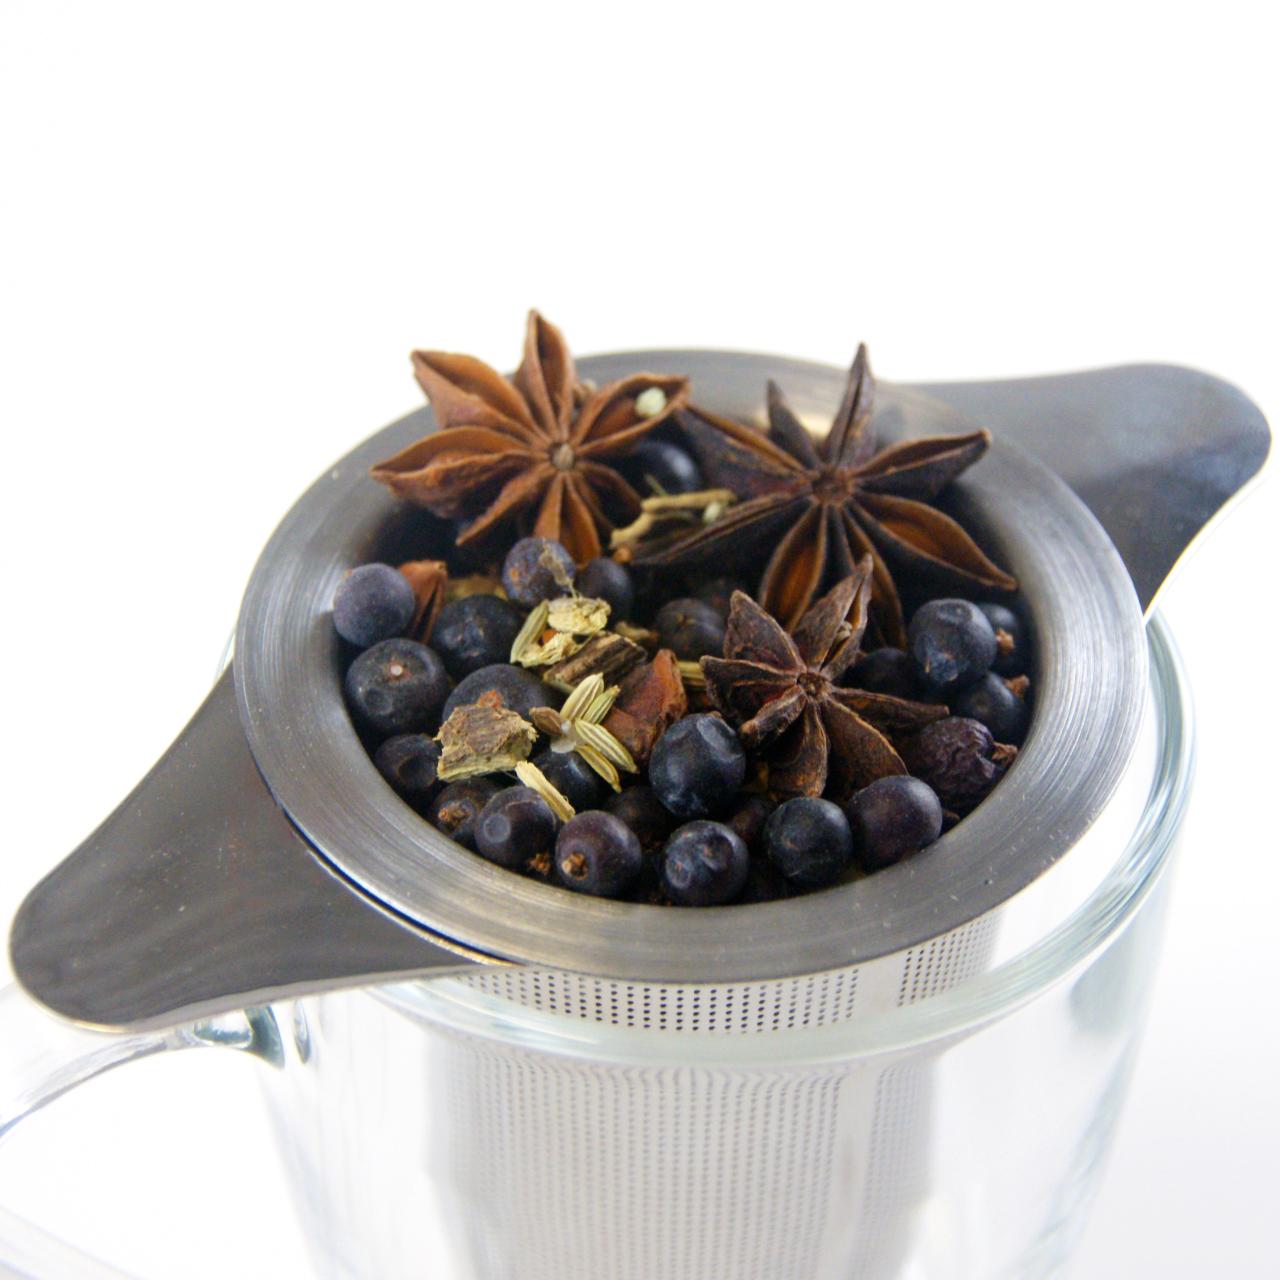 Fleurige huid thee, nieuwe gezondheidsthee die gebaseerd is op kruiden die de huid ondersteunen.